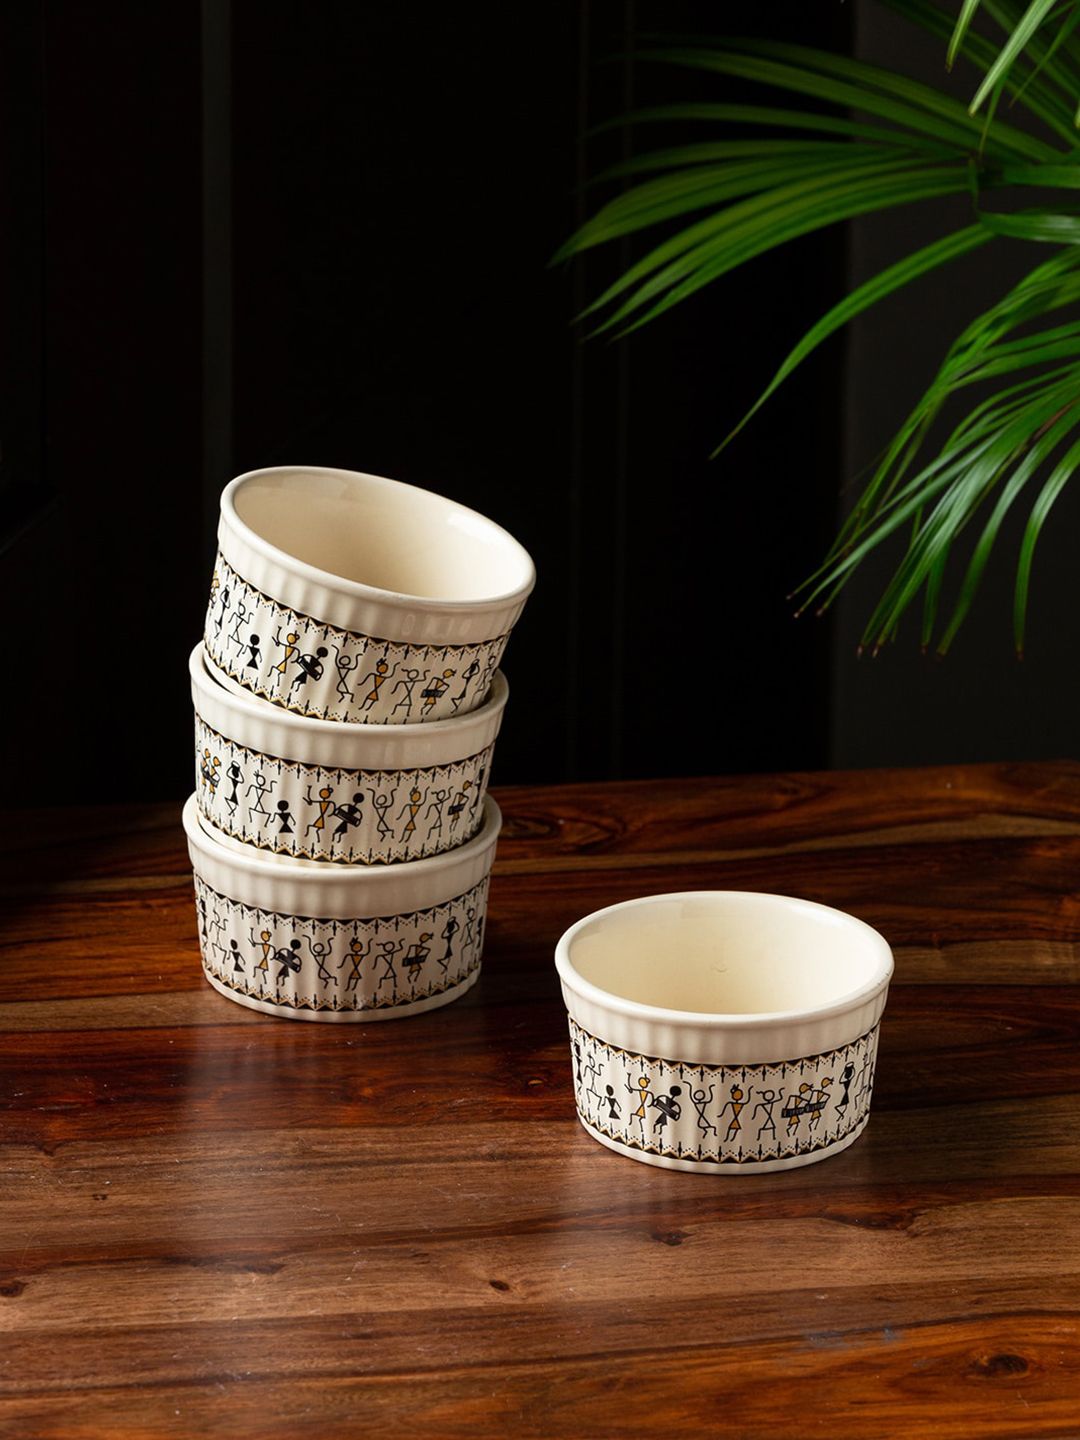 ExclusiveLane White & Black Set of 4 Warli Printed Ceramic Dinner Bowls Price in India